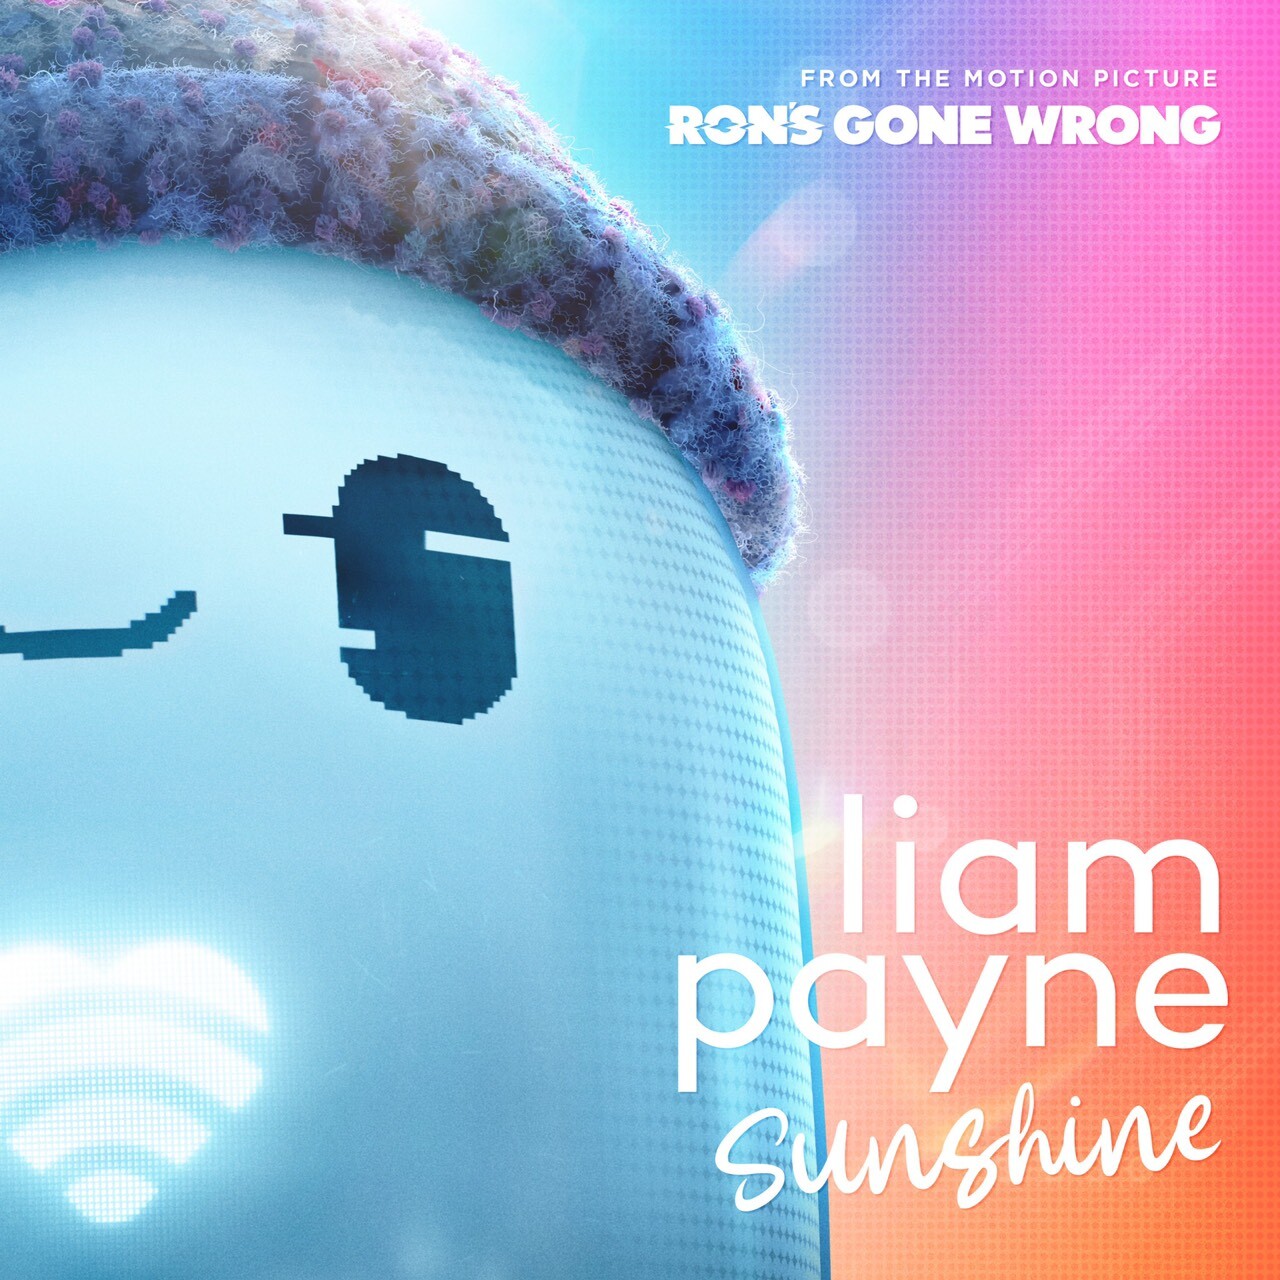 "Liam Payne" ส่งซิงเกิลใหม่ "Sunshine" ประกอบภาพยนตร์แอนิเมชั่นจากค่าย 20th Century เรื่อง "Ron's Gone Wrong" ที่จะพาทุกคนสัมผัสอารมณ์ฟีลกู้ด ฟังพร้อมกันในวันที่ 27 สิงหาคมนี้